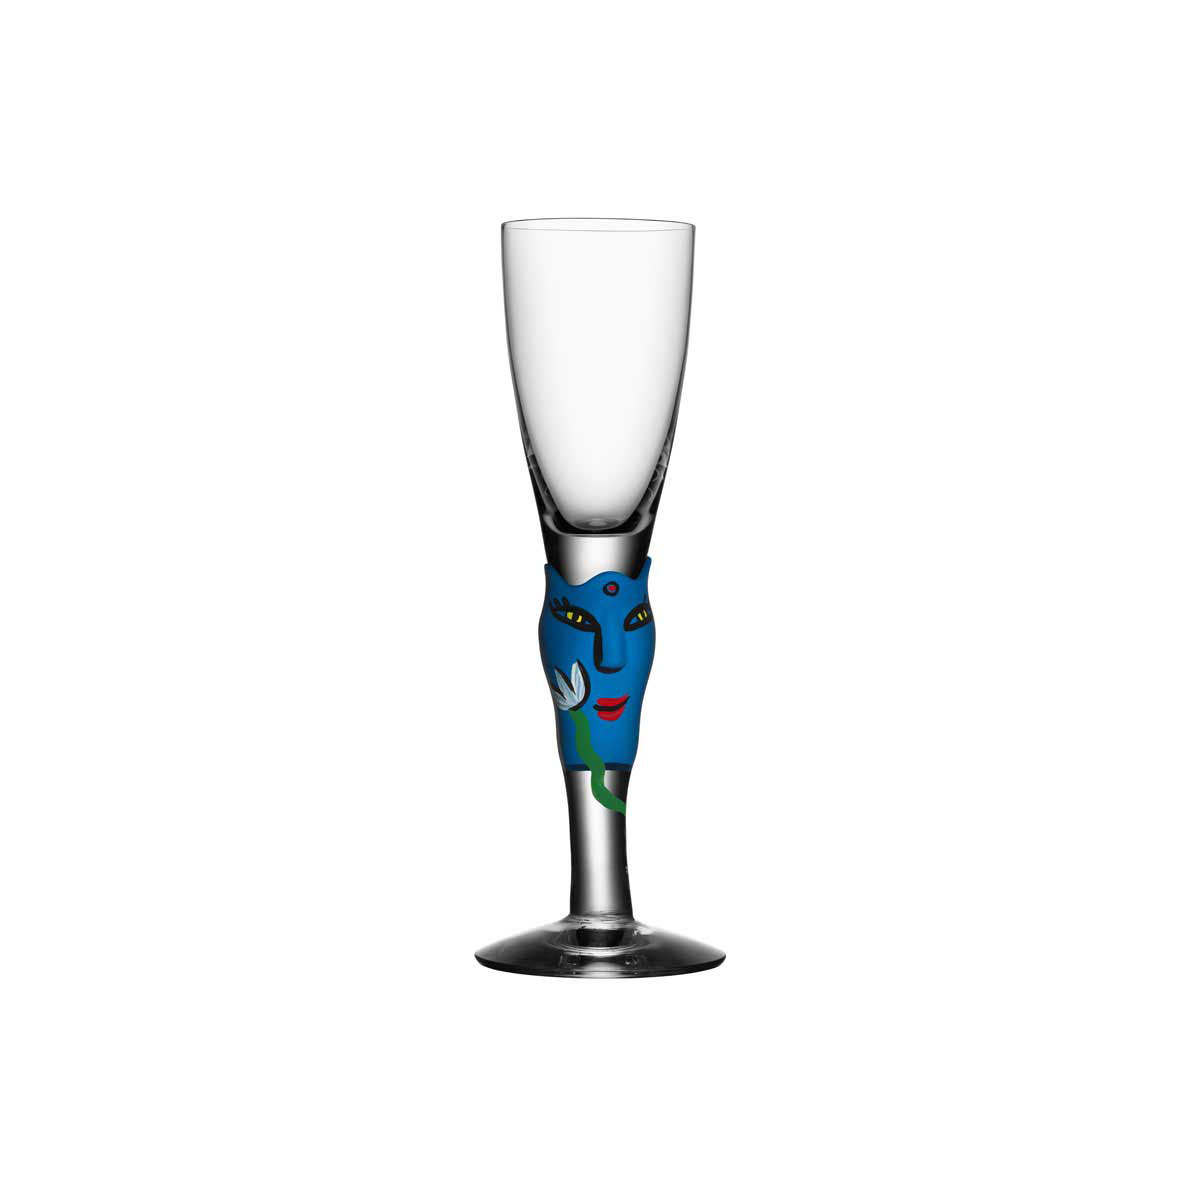 Kosta Boda Open Minds Crystal Shot Glass, Blue, Single